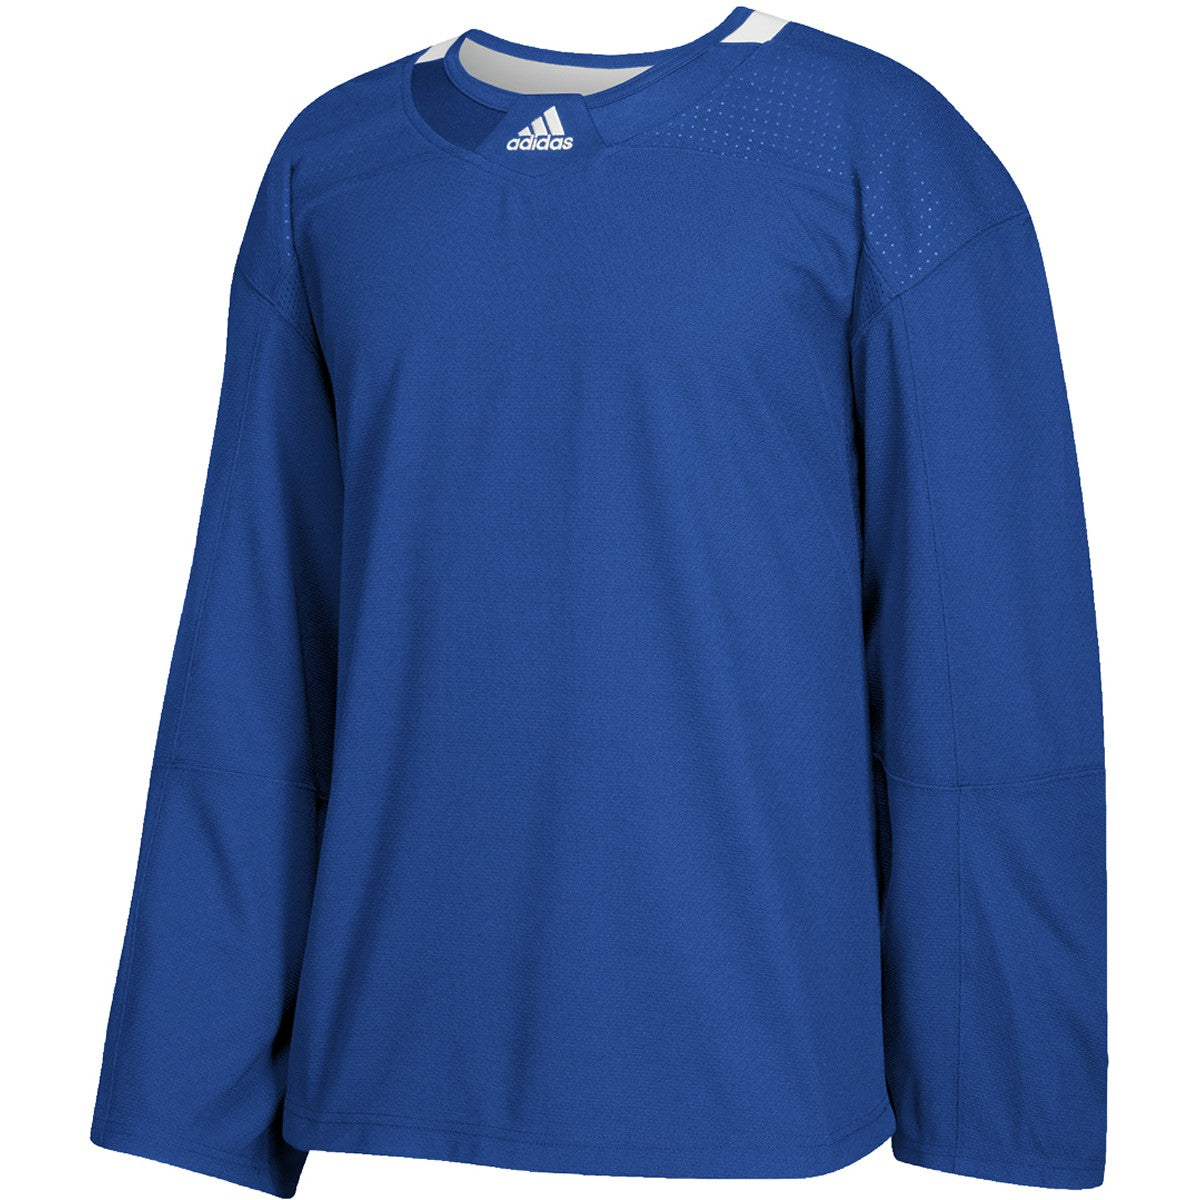 Practice Jersey - Washington Capitals - Orange Adidas Size 58 - Pro Stock  Hockey